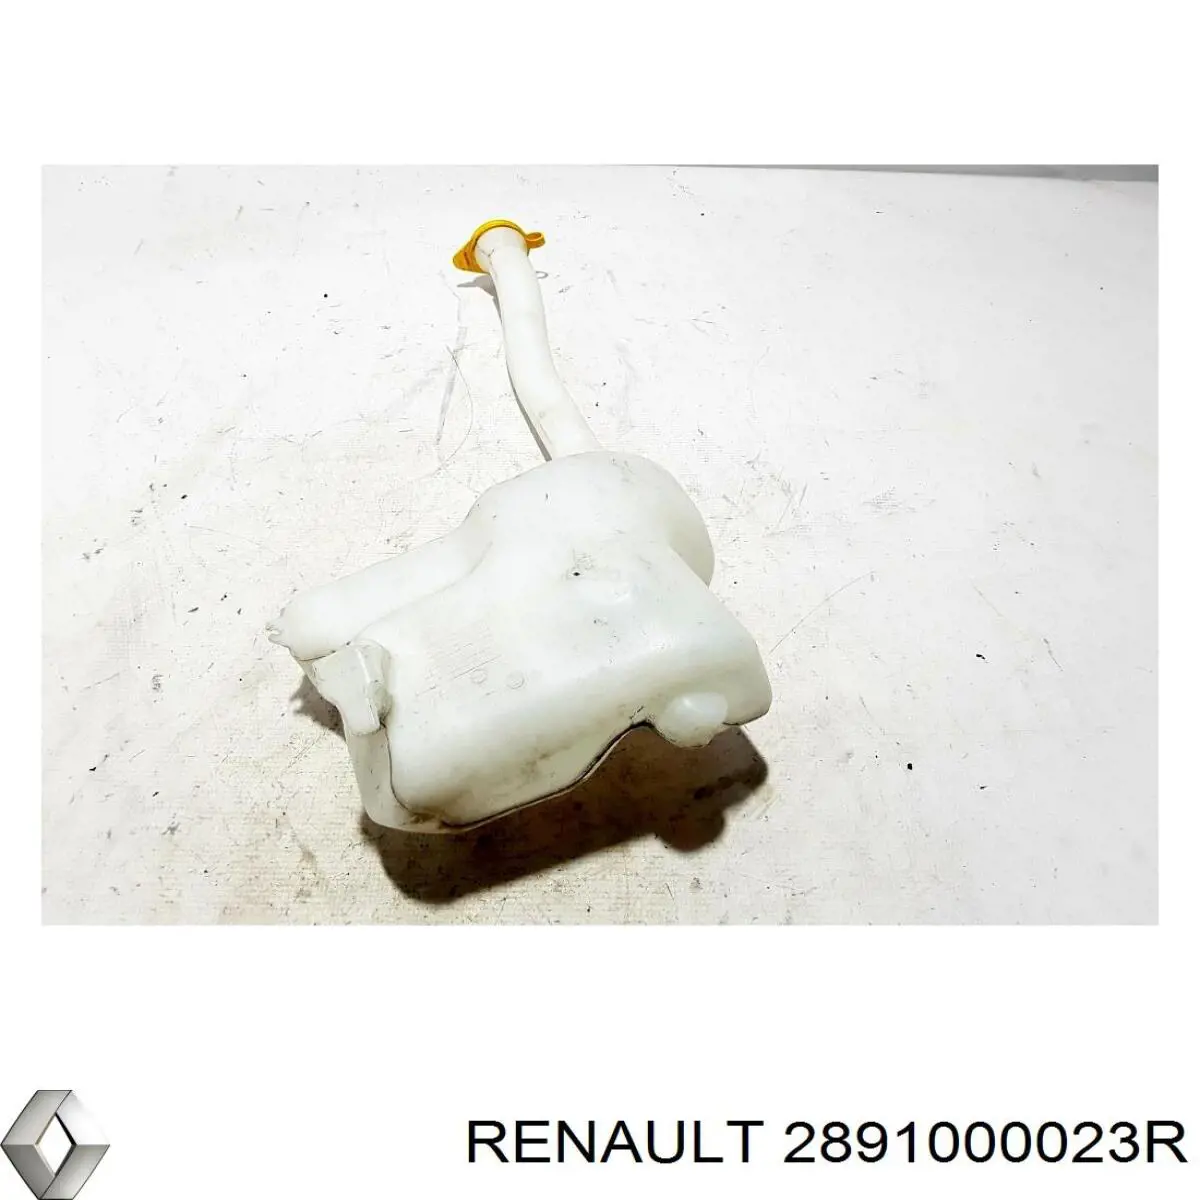 2891000023R Renault (RVI) depósito de agua del limpiaparabrisas